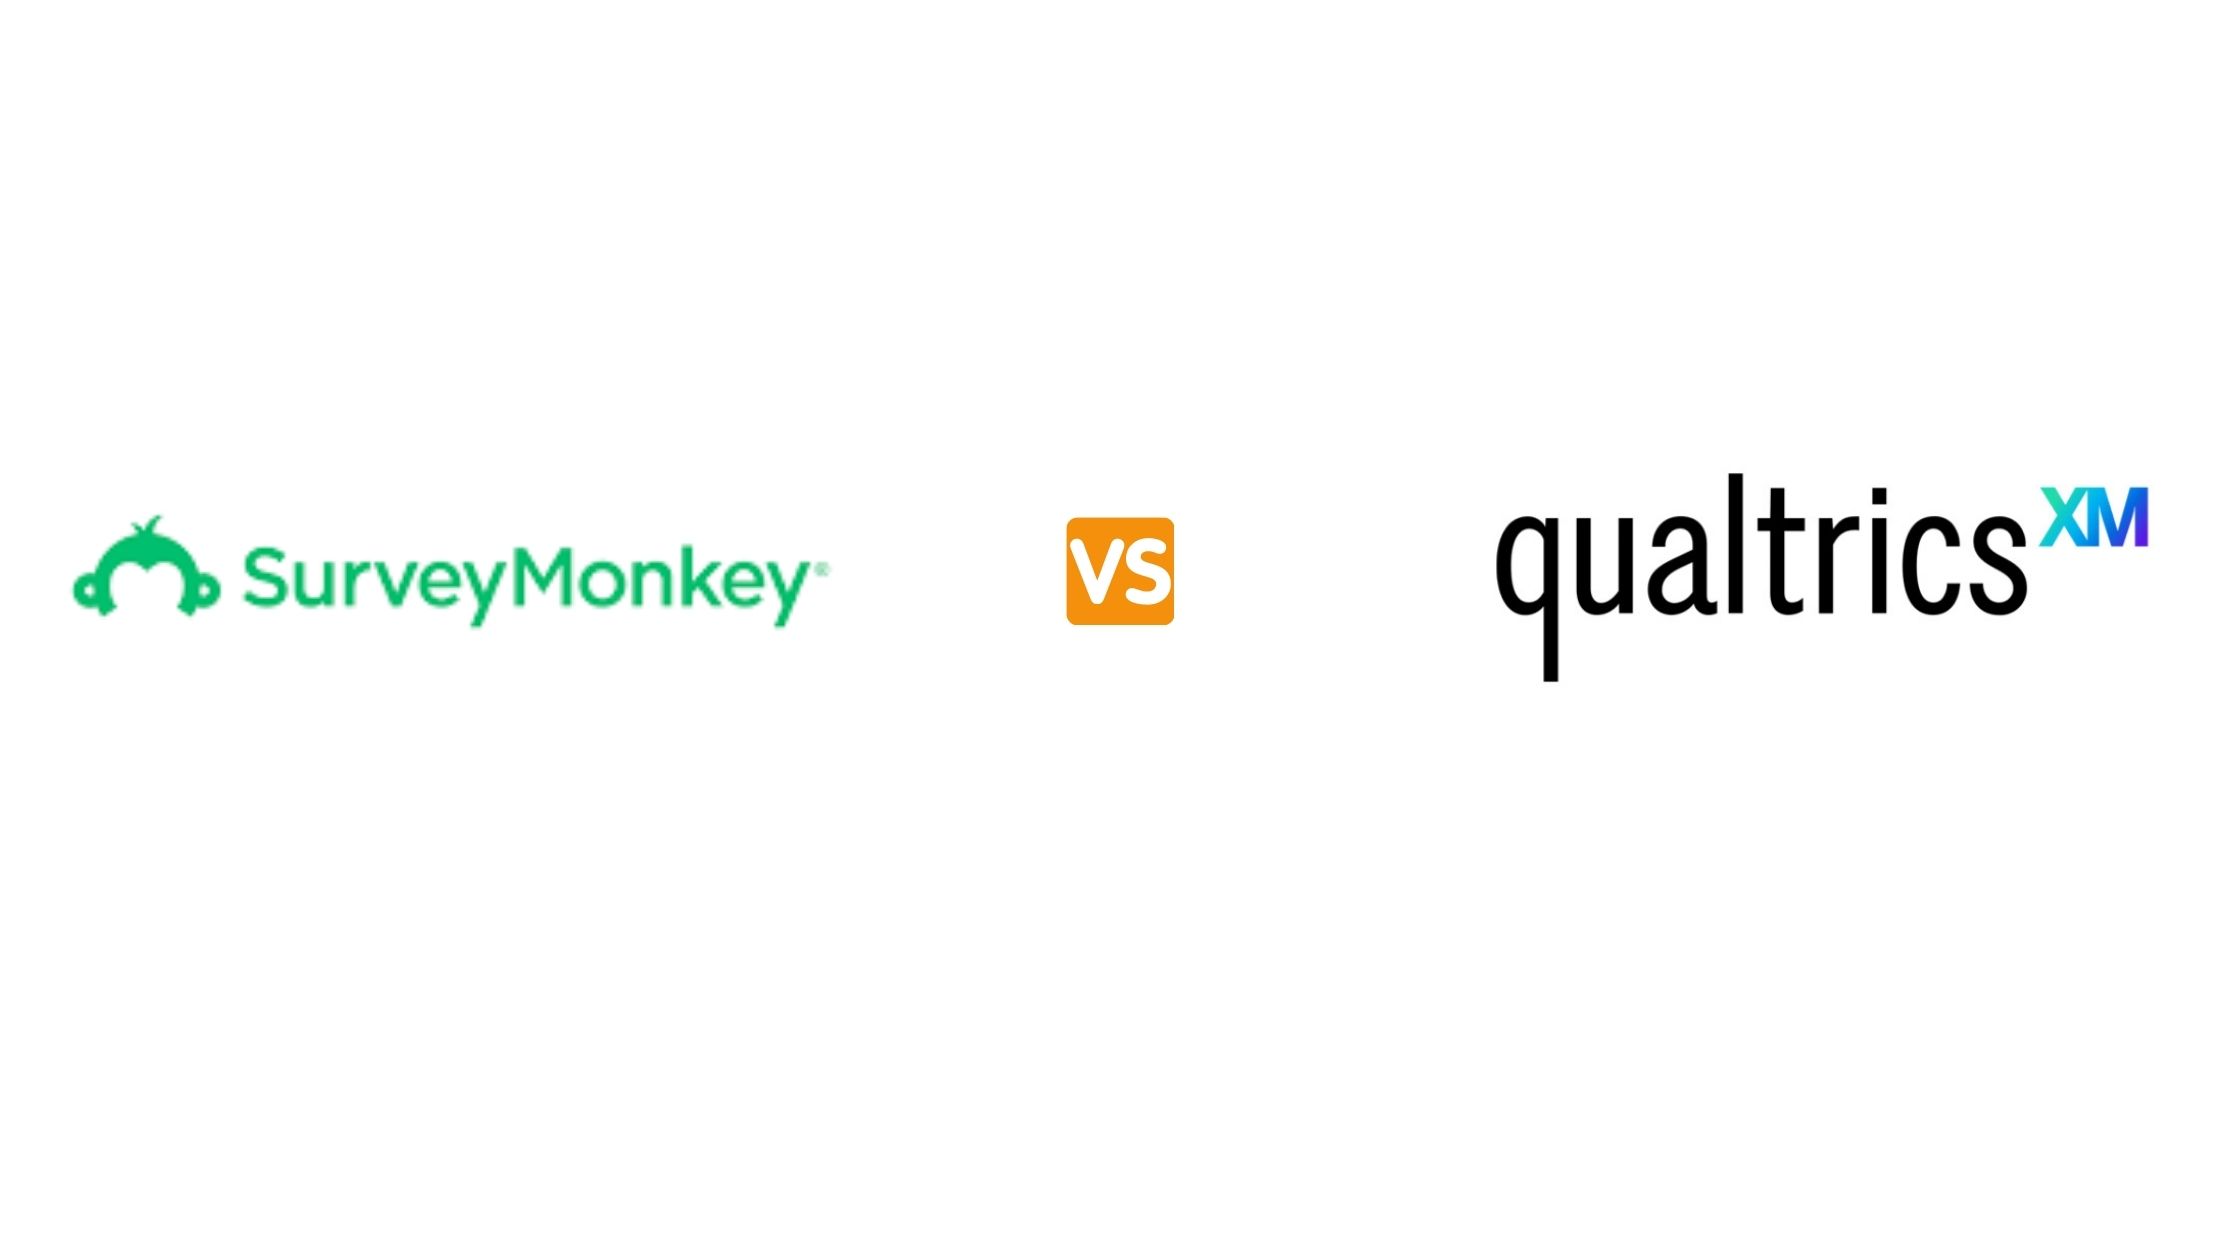 surveymonkey vs qualtrics